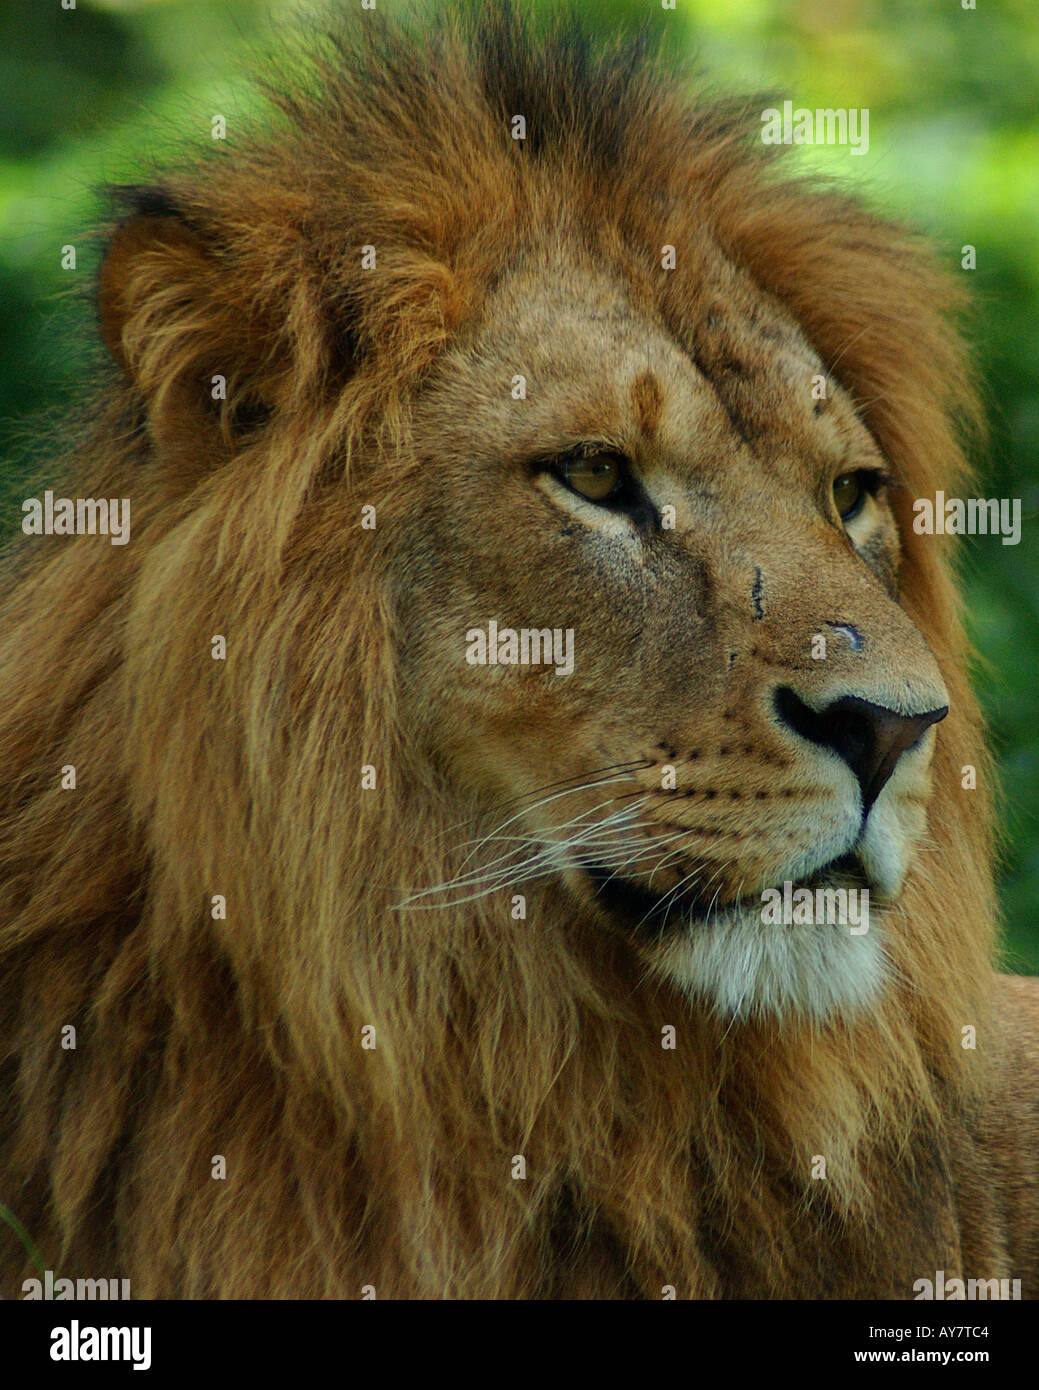 A Regal Lion Stock Photo